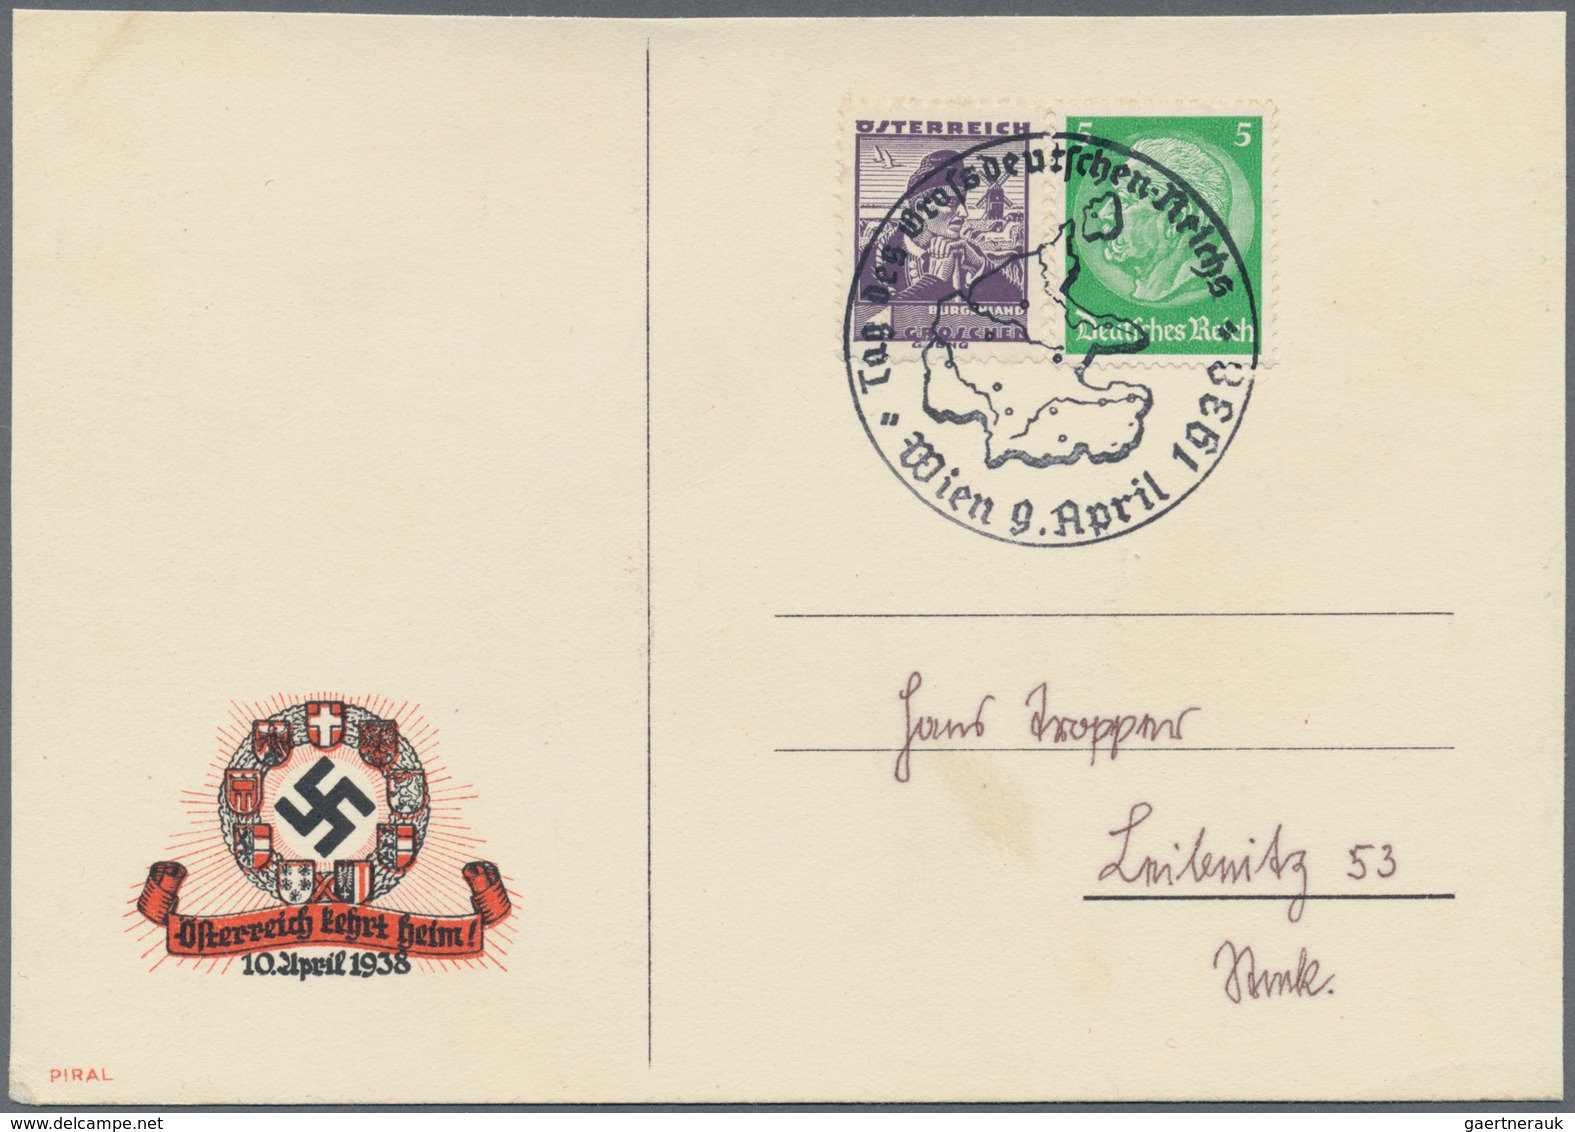 Österreich - Ganzsachen: 1880/2010 (ca.), reichhaltiger Sammlungsbestand von einigen hundert Ganzsac